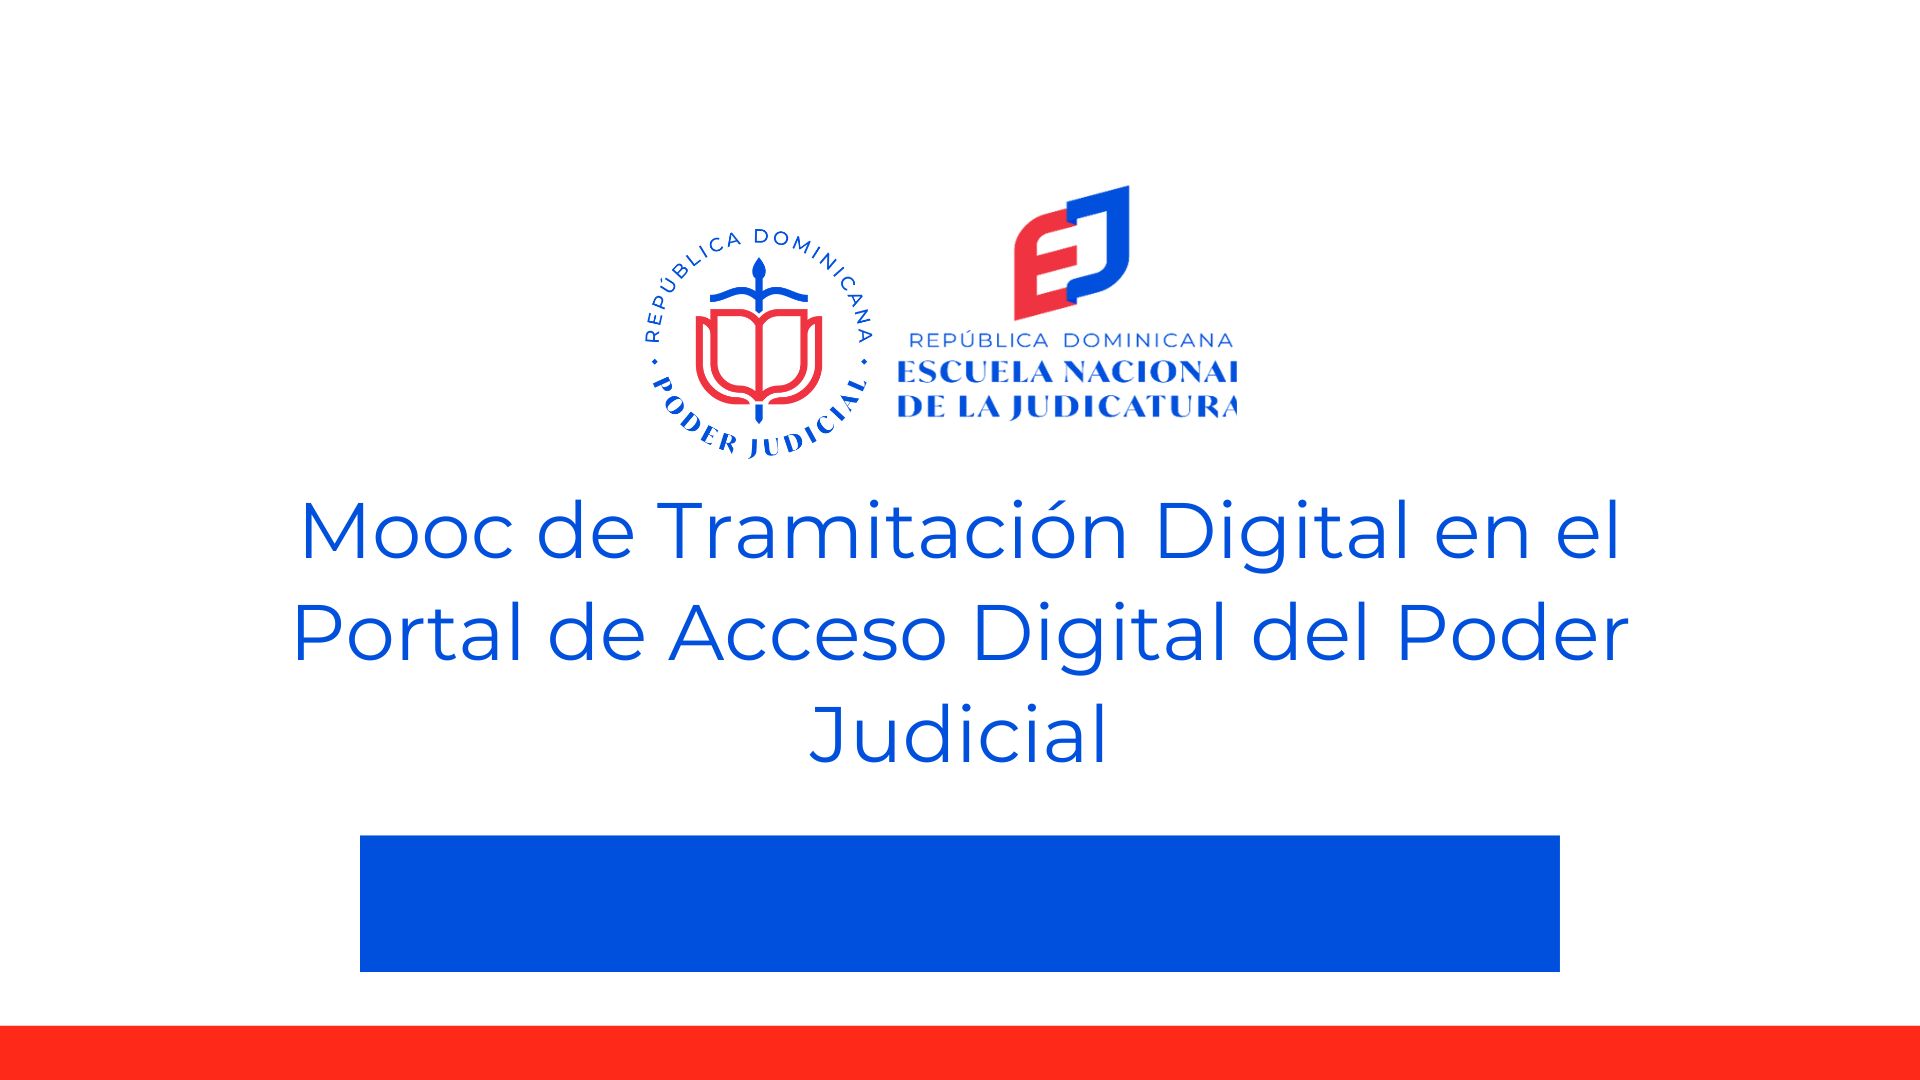 Tramitación Digital en el portal de acceso digital del Poder Judicial